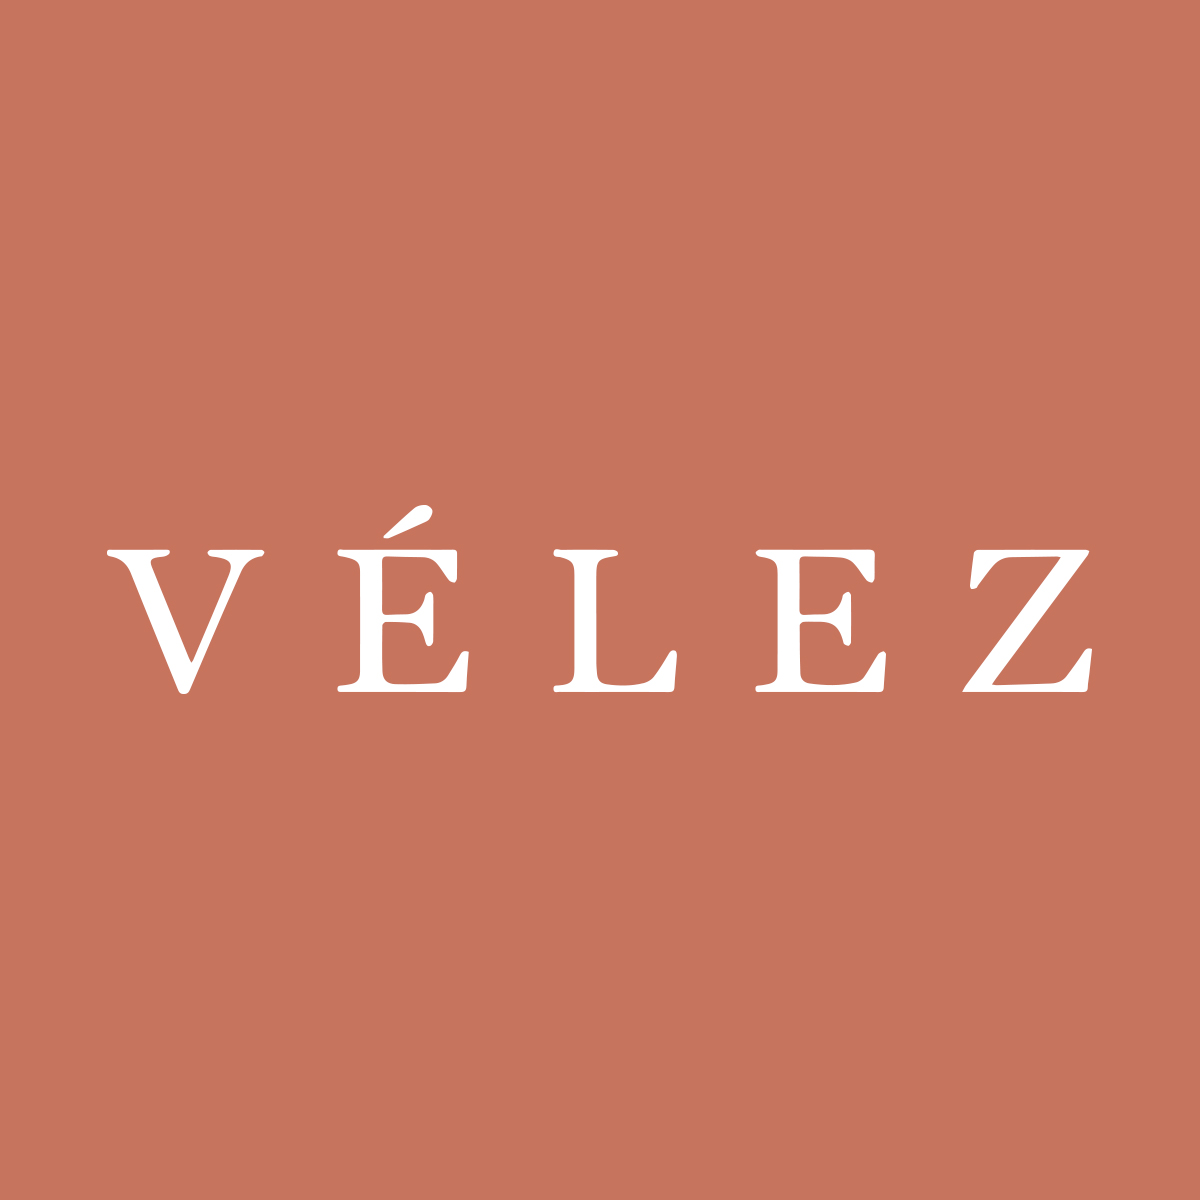  Vélez